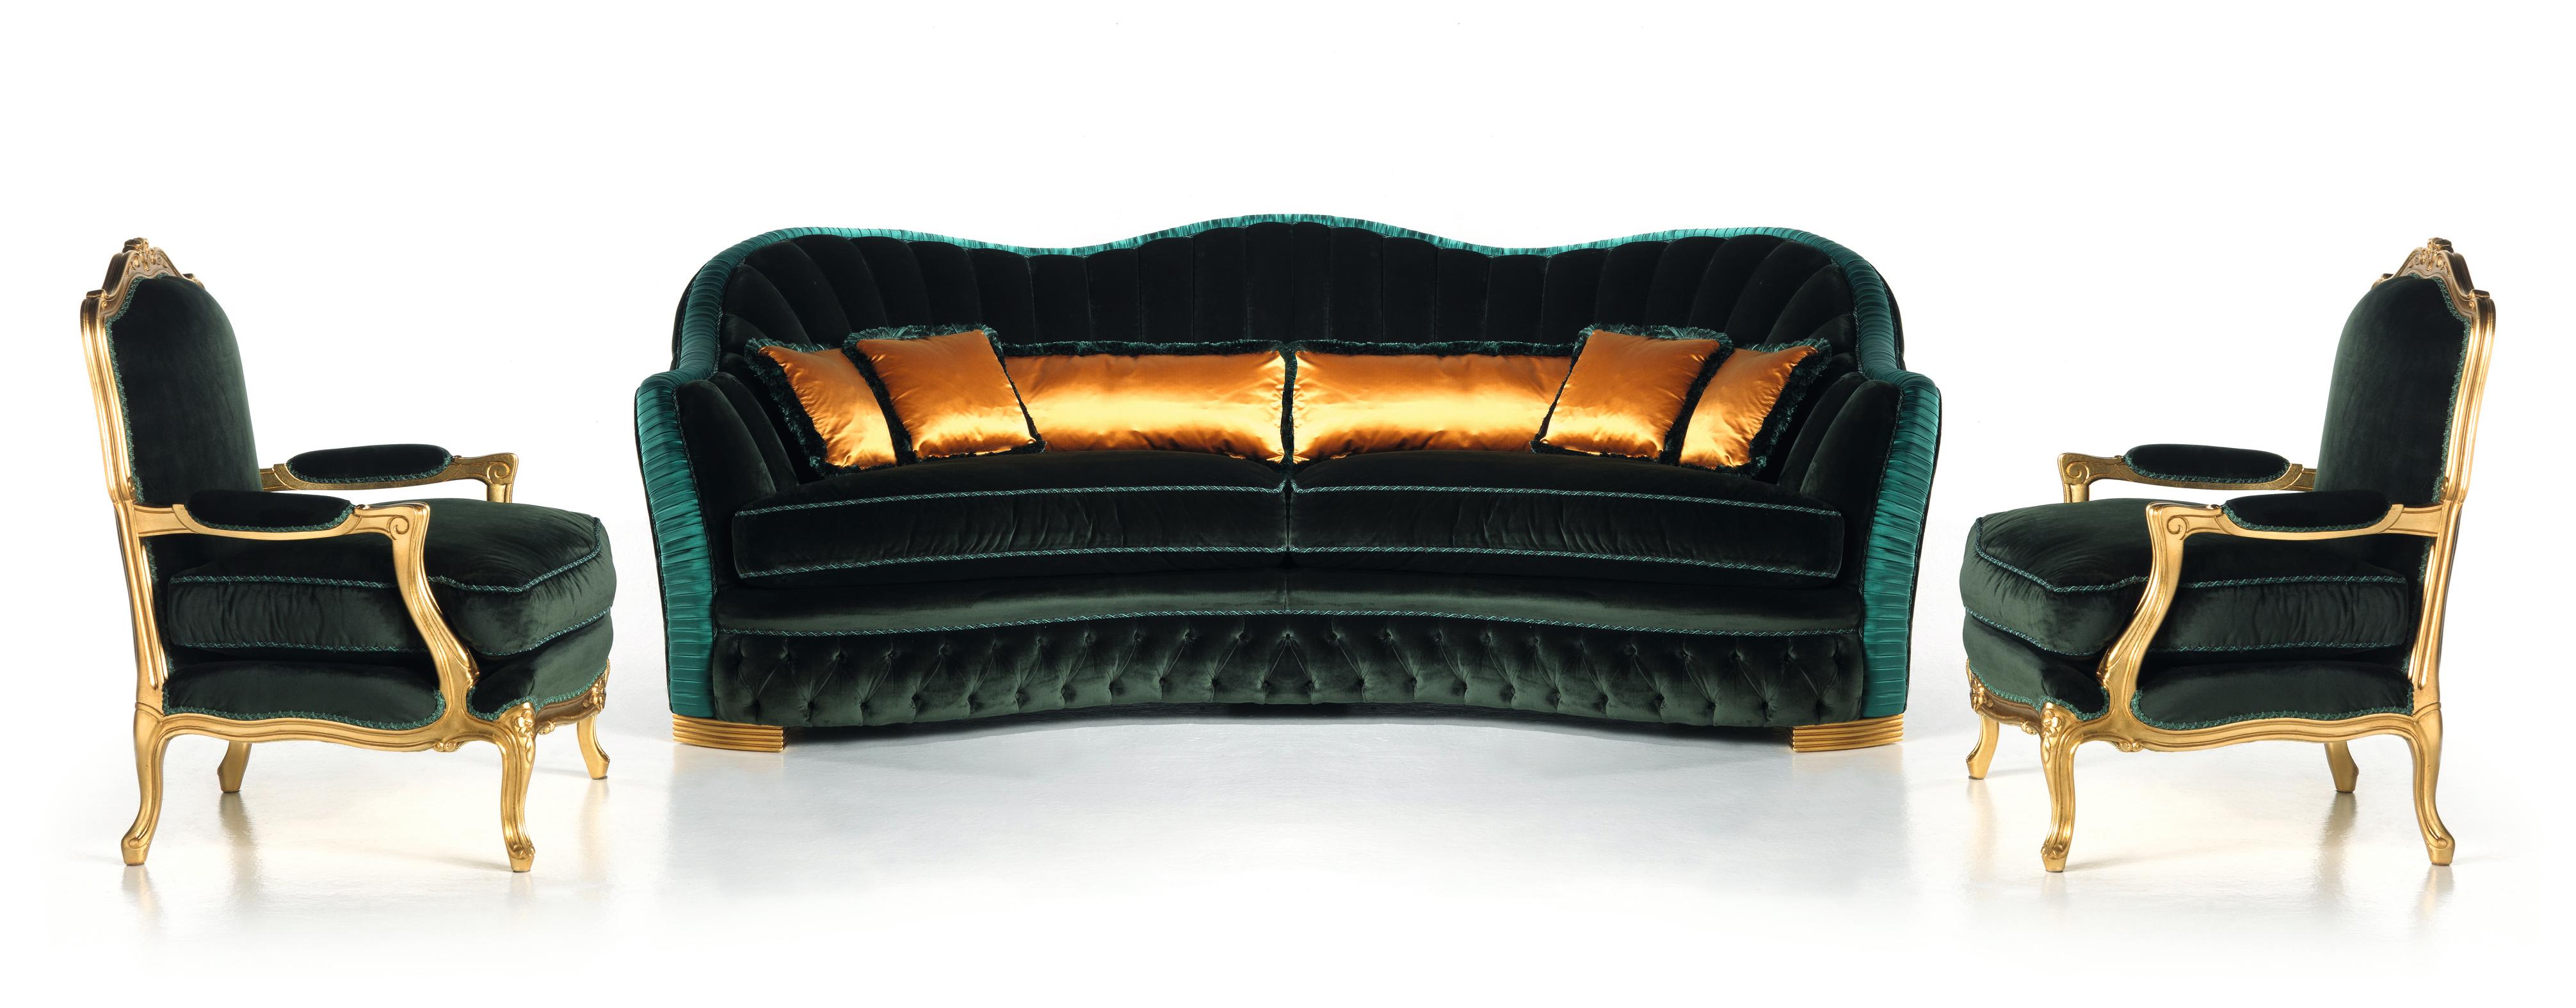 Das Sofa Smeraldo ist eine Sitzgelegenheit des modernen Klassizismus, entworfen, um
komfortabel und elegant leben im Wohnzimmer. Stattliches Modell
zeichnet sich durch die harmonische Gestaltung des Rückens aus, der
durch die handgefertigten Falten,